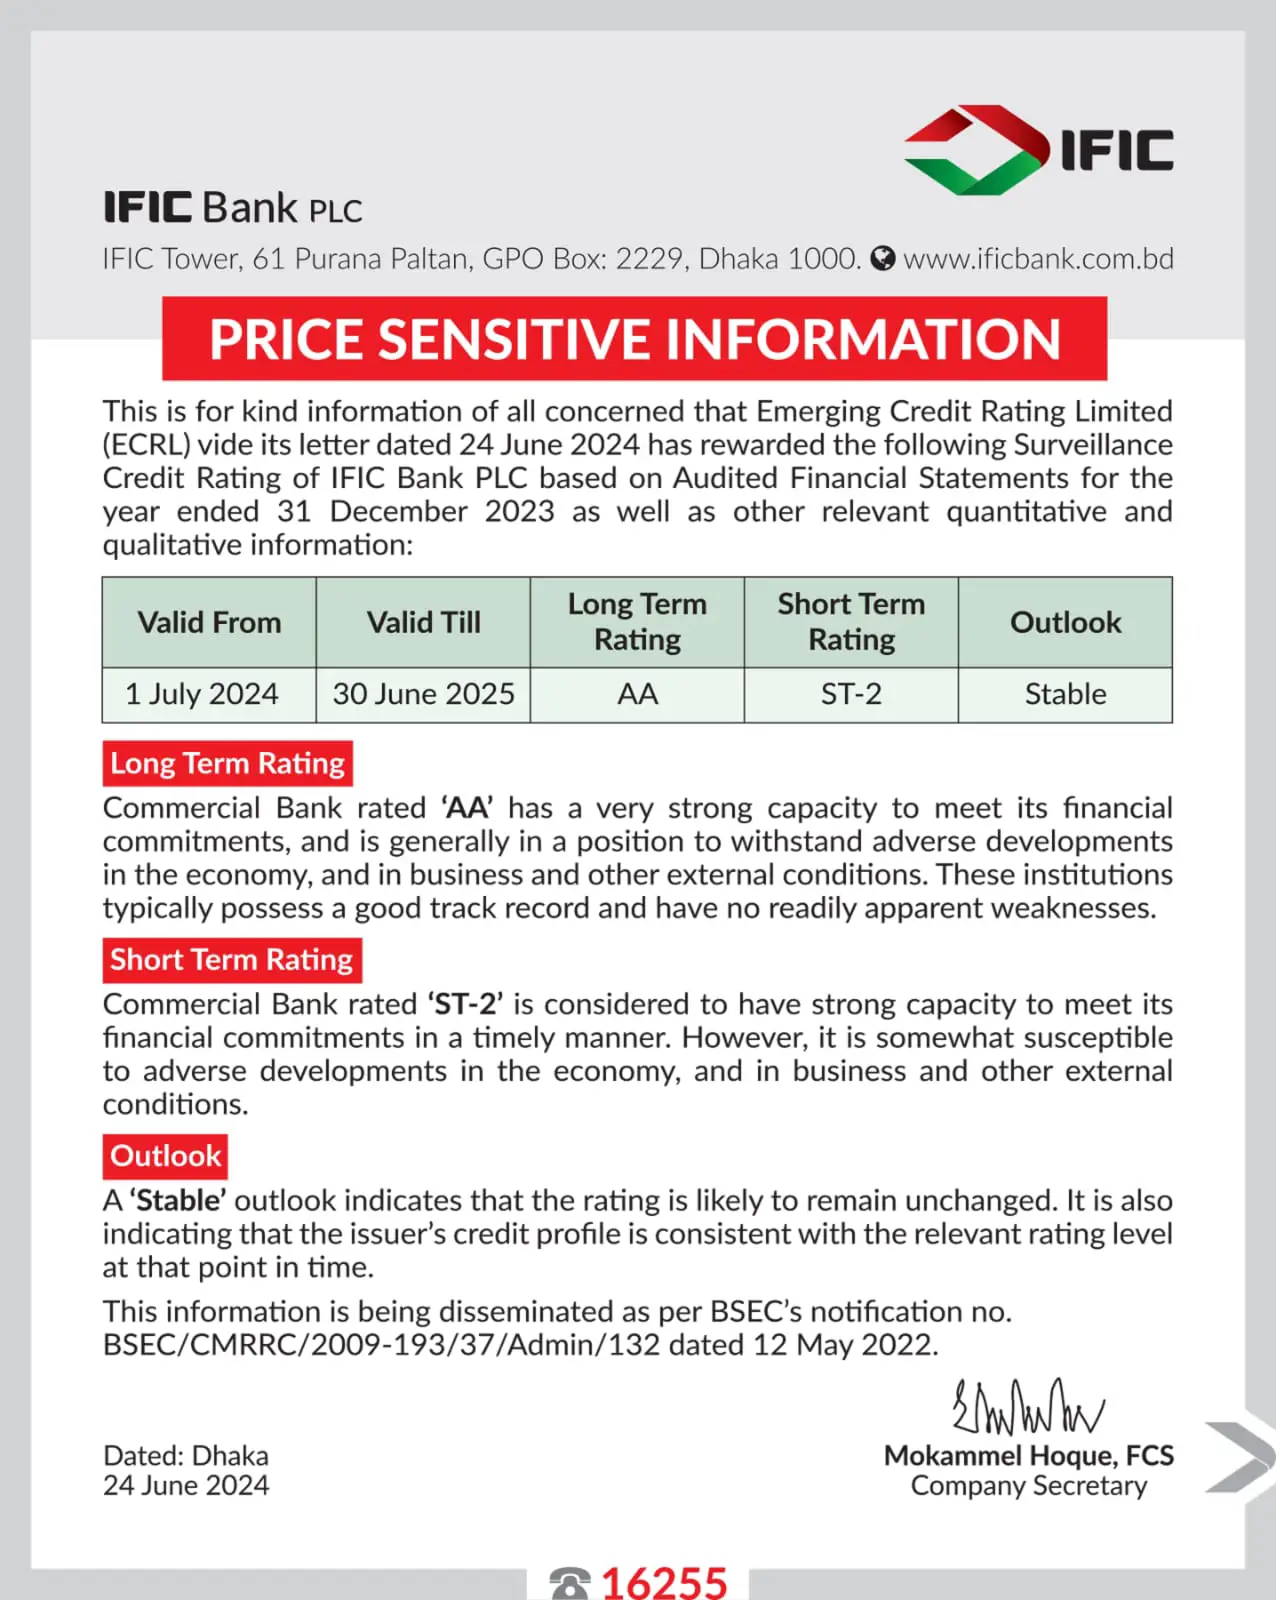 IFIC Bank PLC